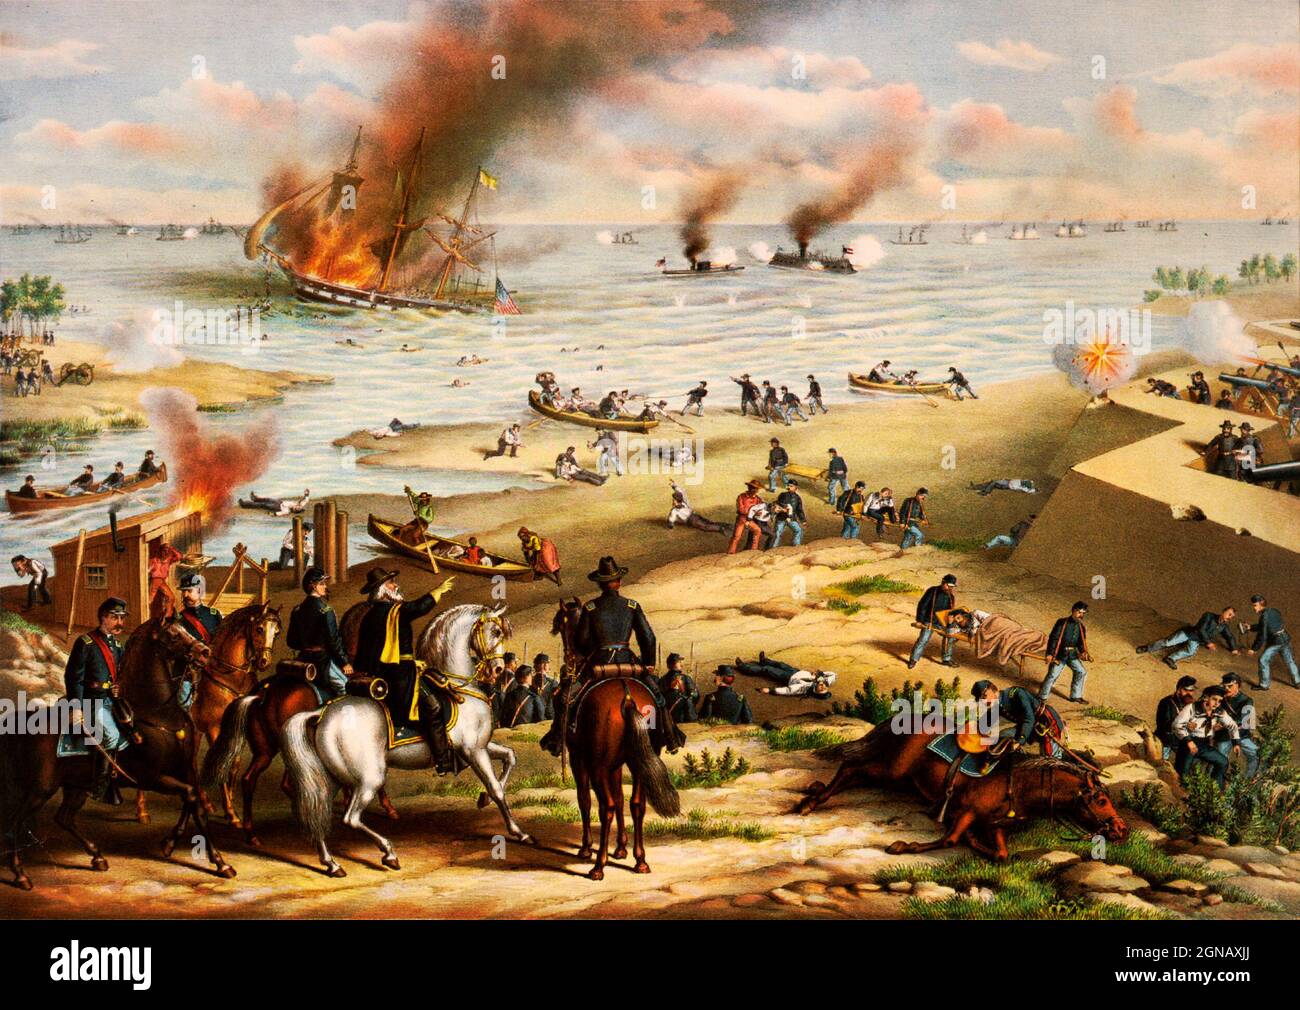 Schlacht von Monitor und Merrimack, auch Battle of Hampton Roads genannt (9. März 1862), im amerikanischen Bürgerkrieg, Seeangriff auf Hampton Roads, Virginia, einem Hafen an der Mündung des James River, Bemerkenswert ist das erste Duell der Geschichte zwischen eisengekleideten Kriegsschiffen und der Beginn einer neuen Ära des Seekrieges. Von kurz und Allison Stockfoto